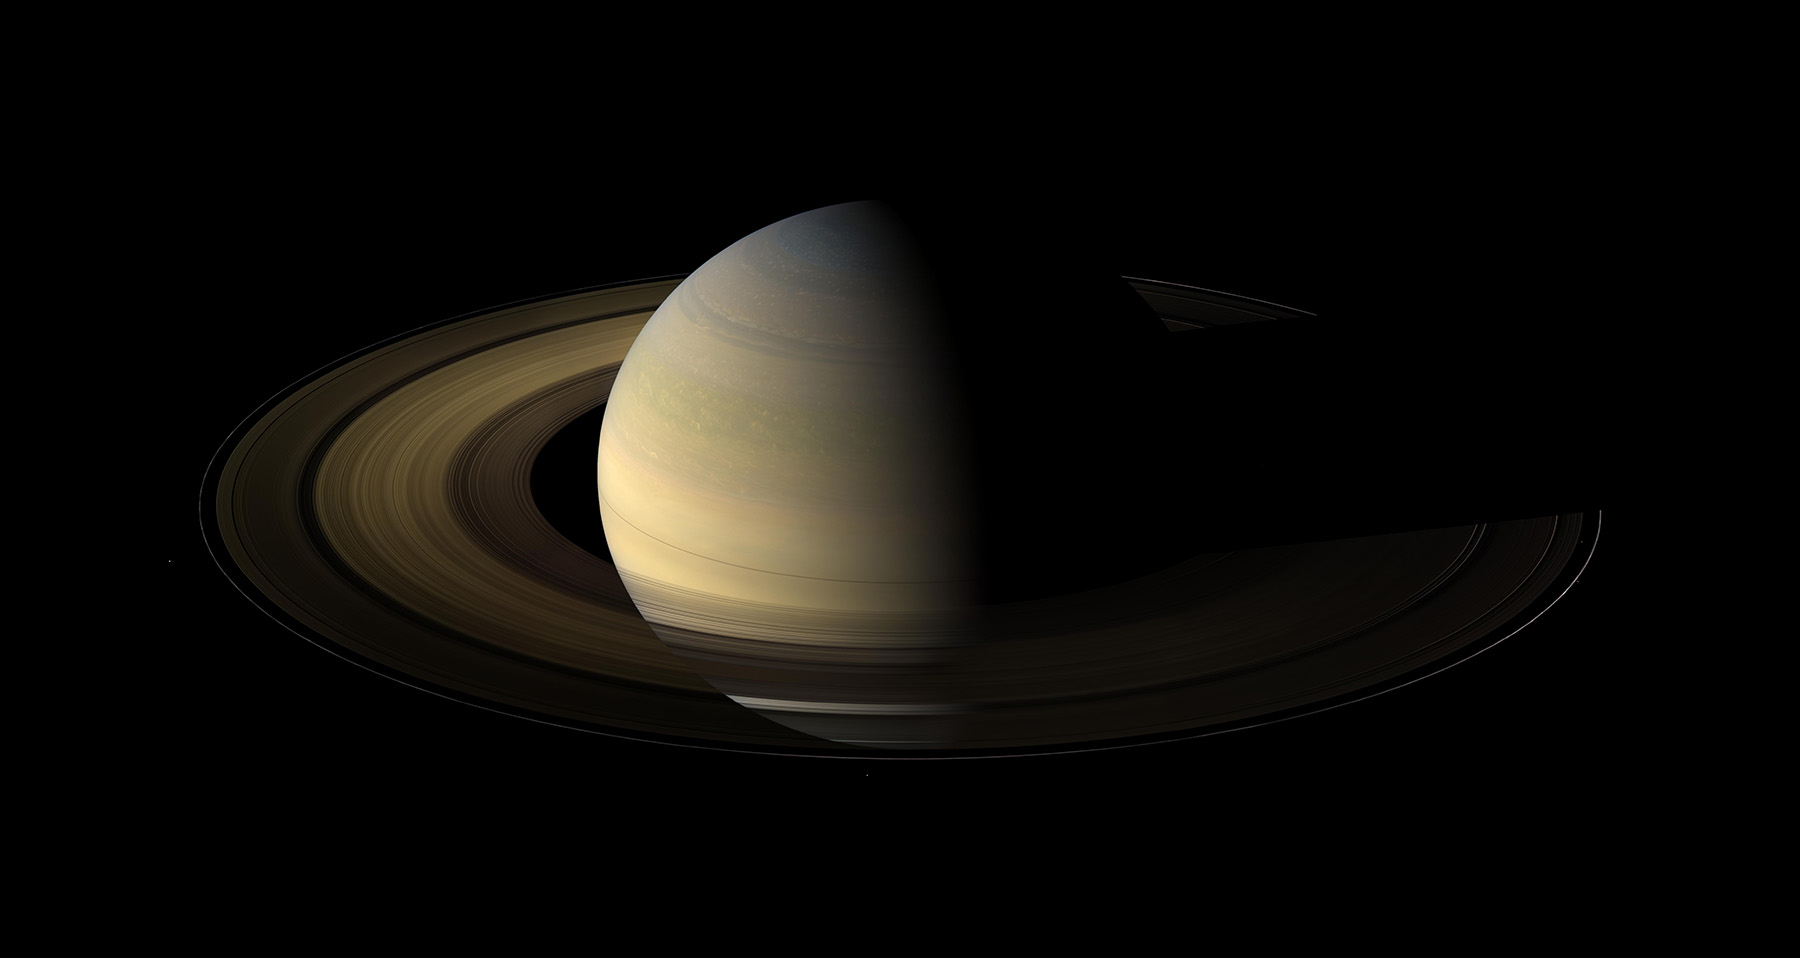 Saturn at Equinox